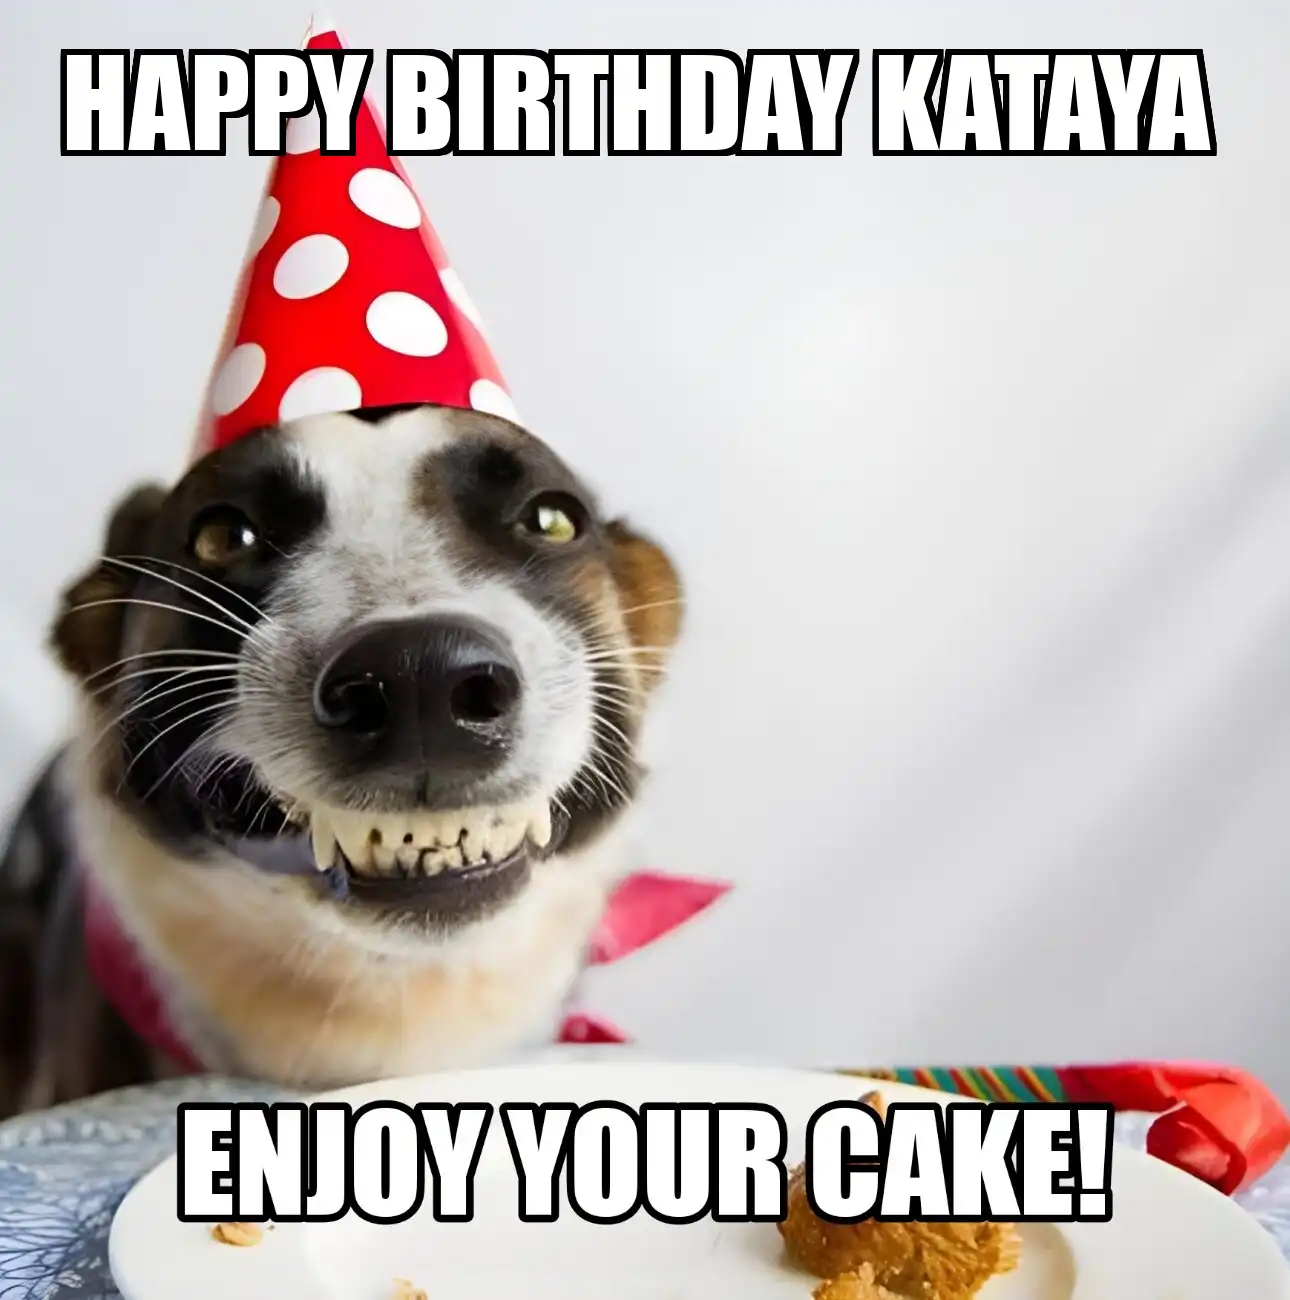 Happy Birthday Kataya Enjoy Your Cake Dog Meme